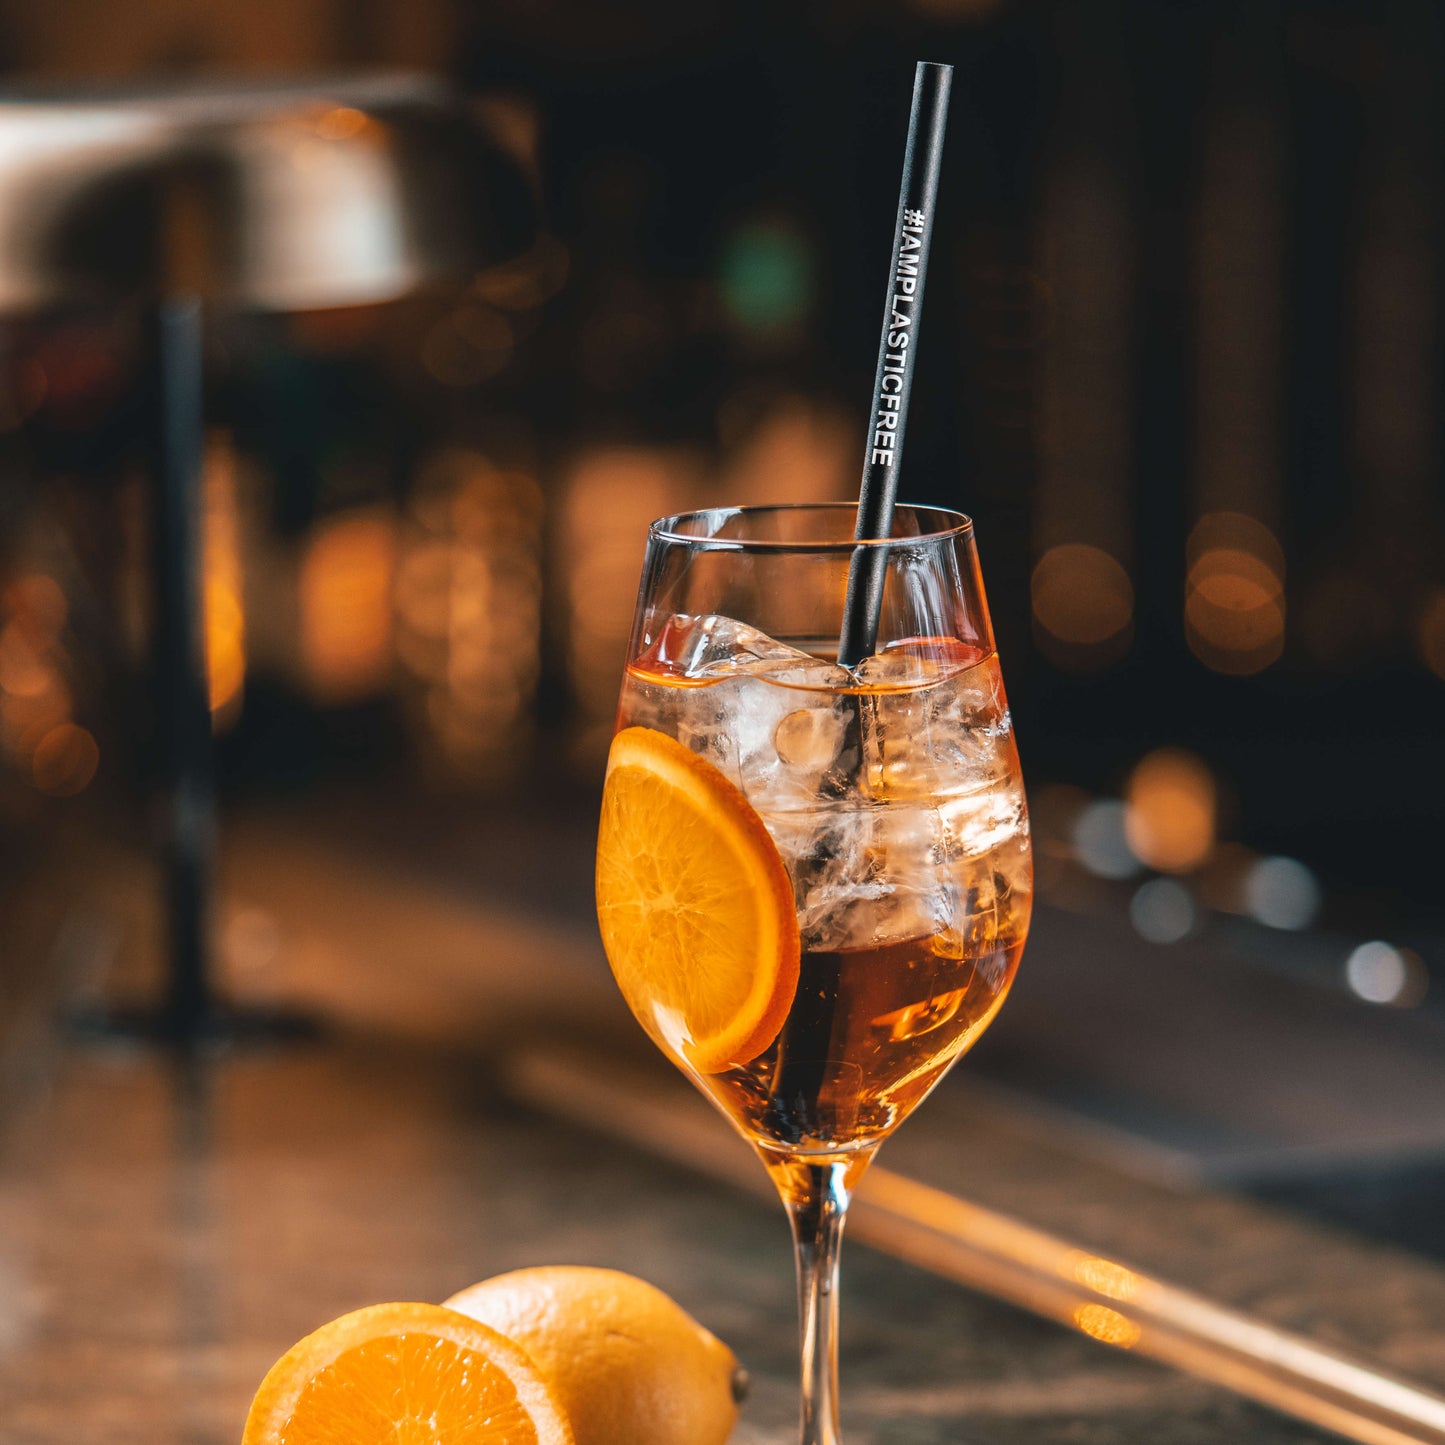 #IAMPLASTICFREE Trinkhalm 2.0 in Weinglas mit orangem Cocktail mit Eiswürfeln und Orangenscheibe